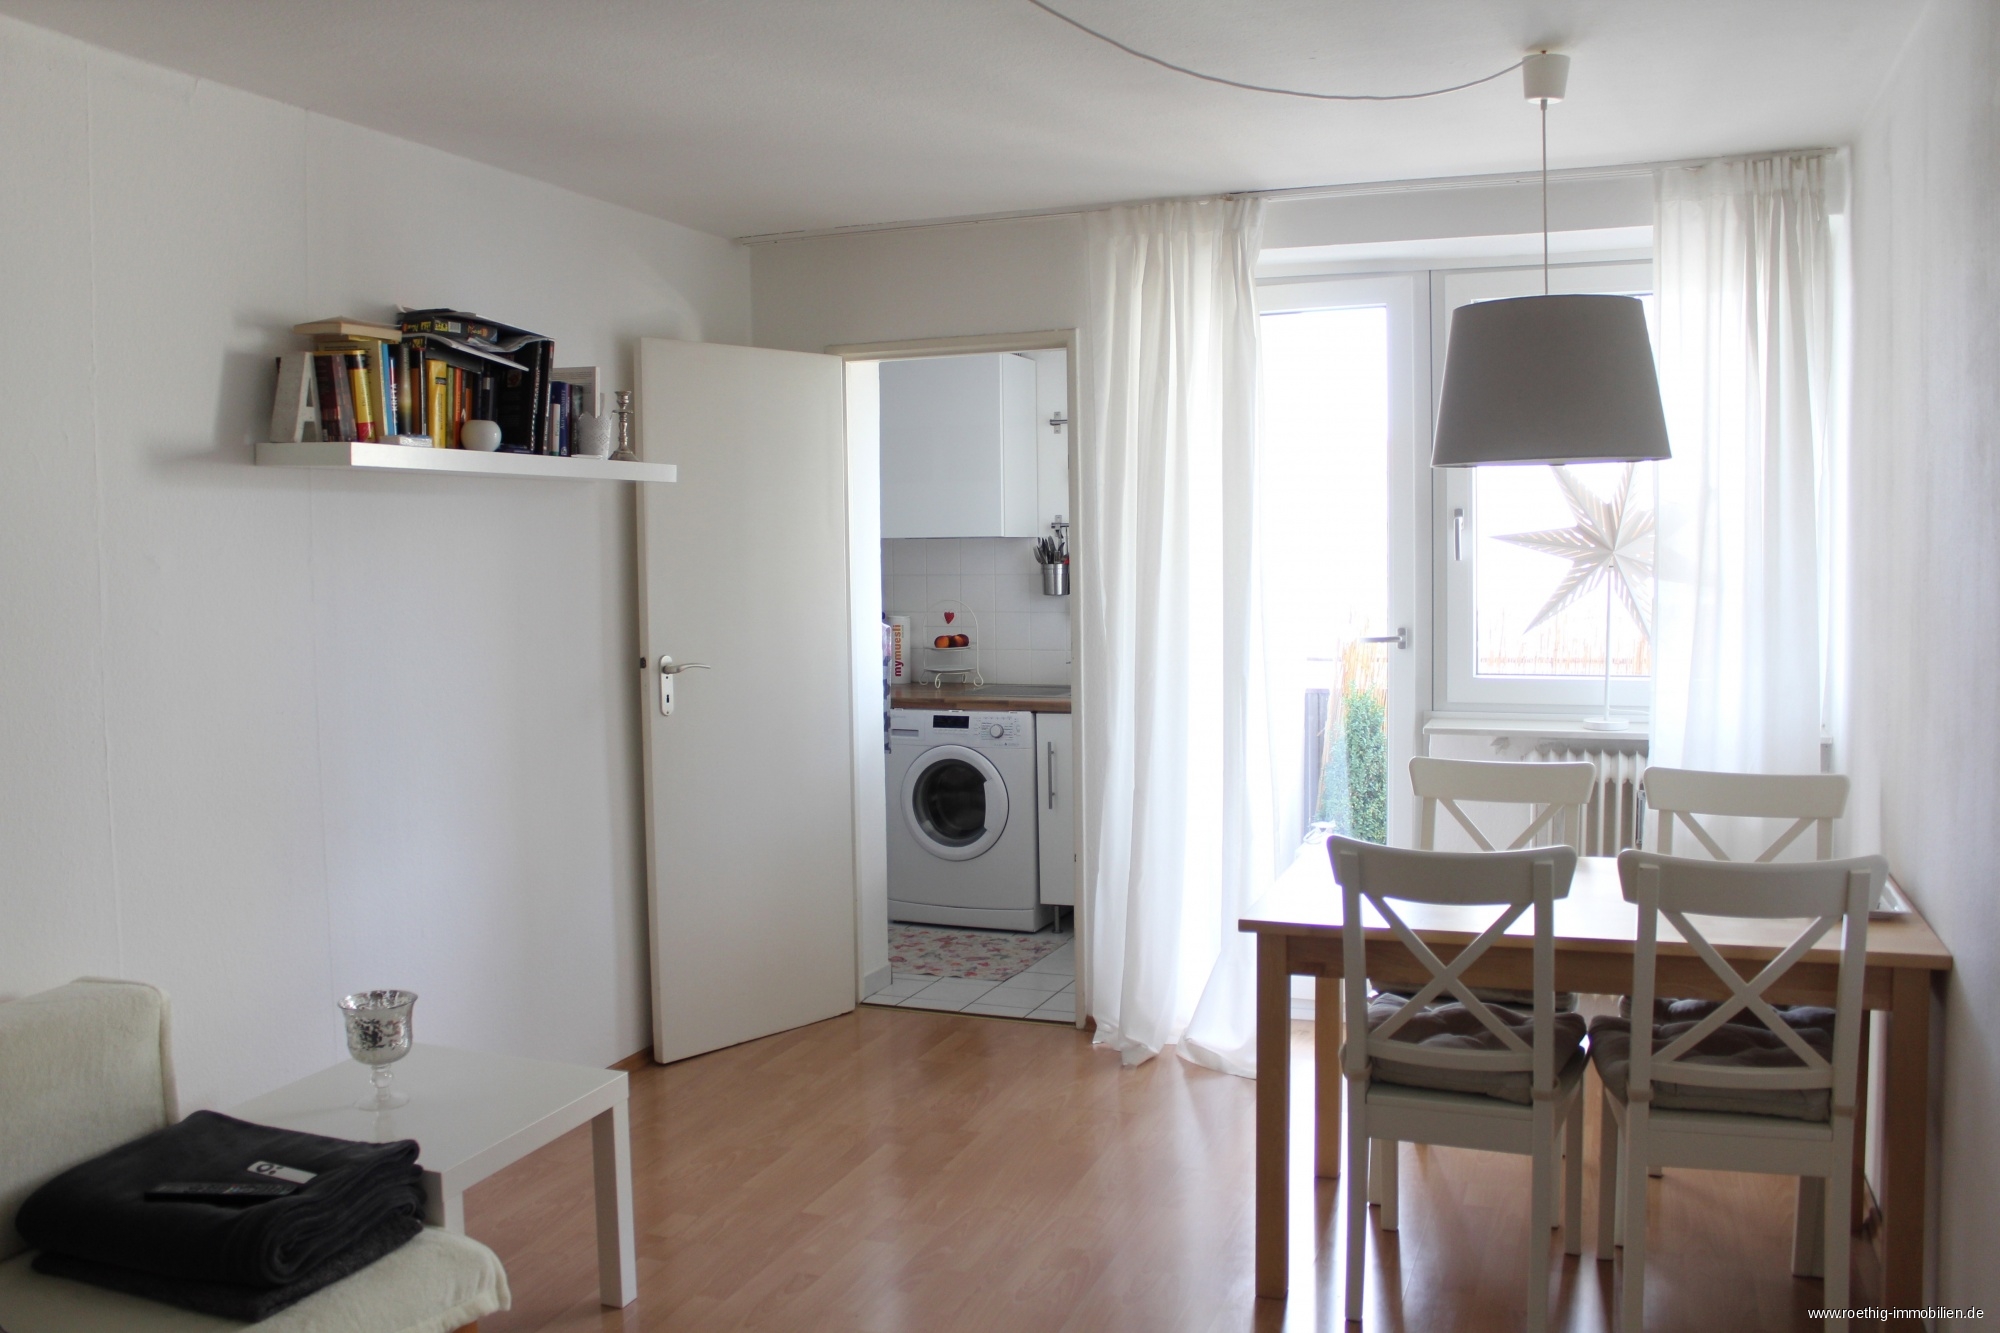 2 Zimmer Wohnung München Kaufen